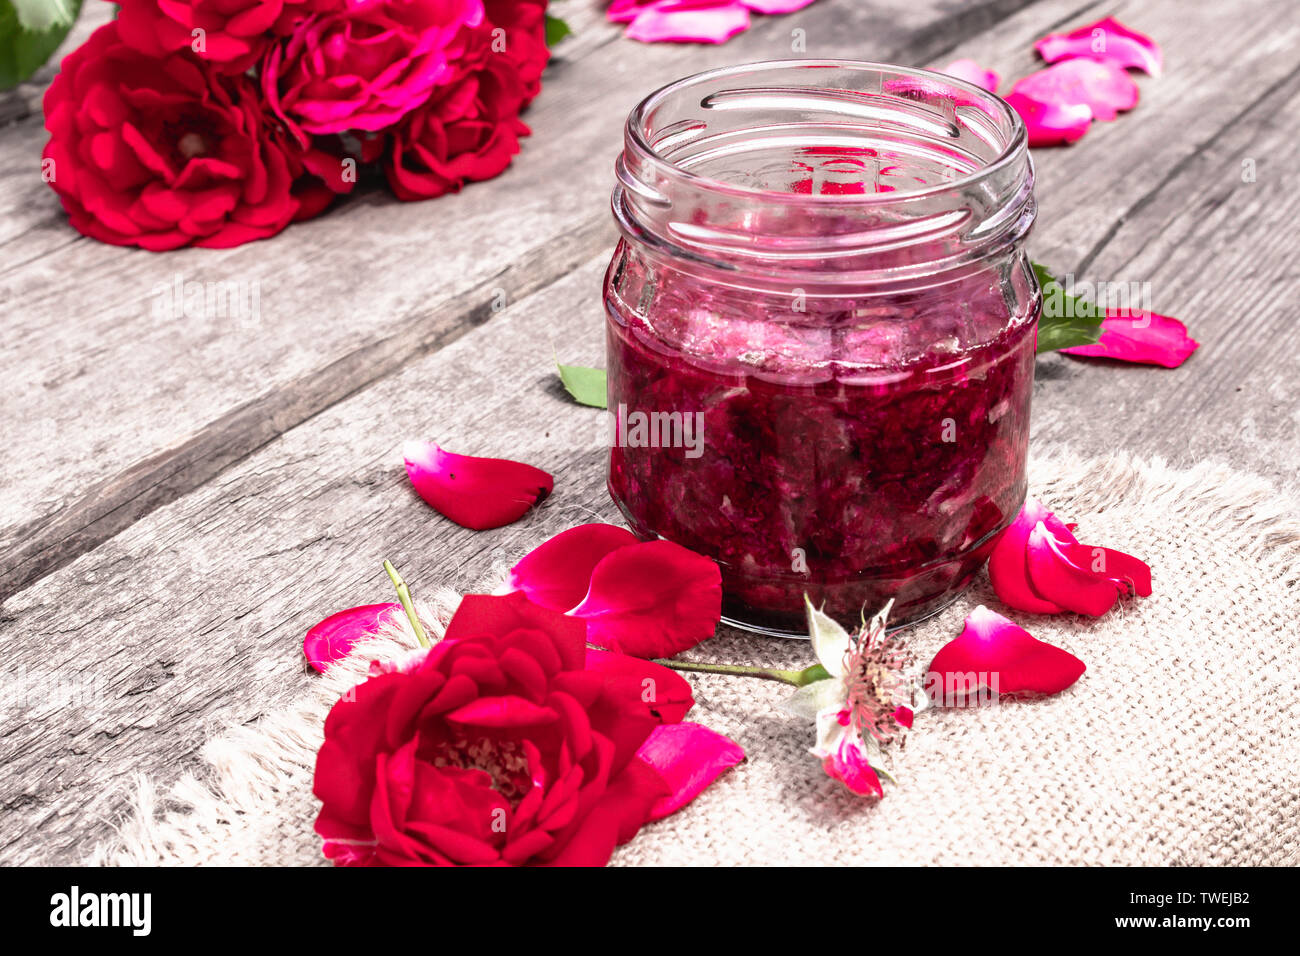 Marmeladenglas von Rosenblättern auf einen hölzernen Tisch mit Blüten von Rosen. Blume Konfitüre. Gesundes Essen. Platz kopieren Stockfoto